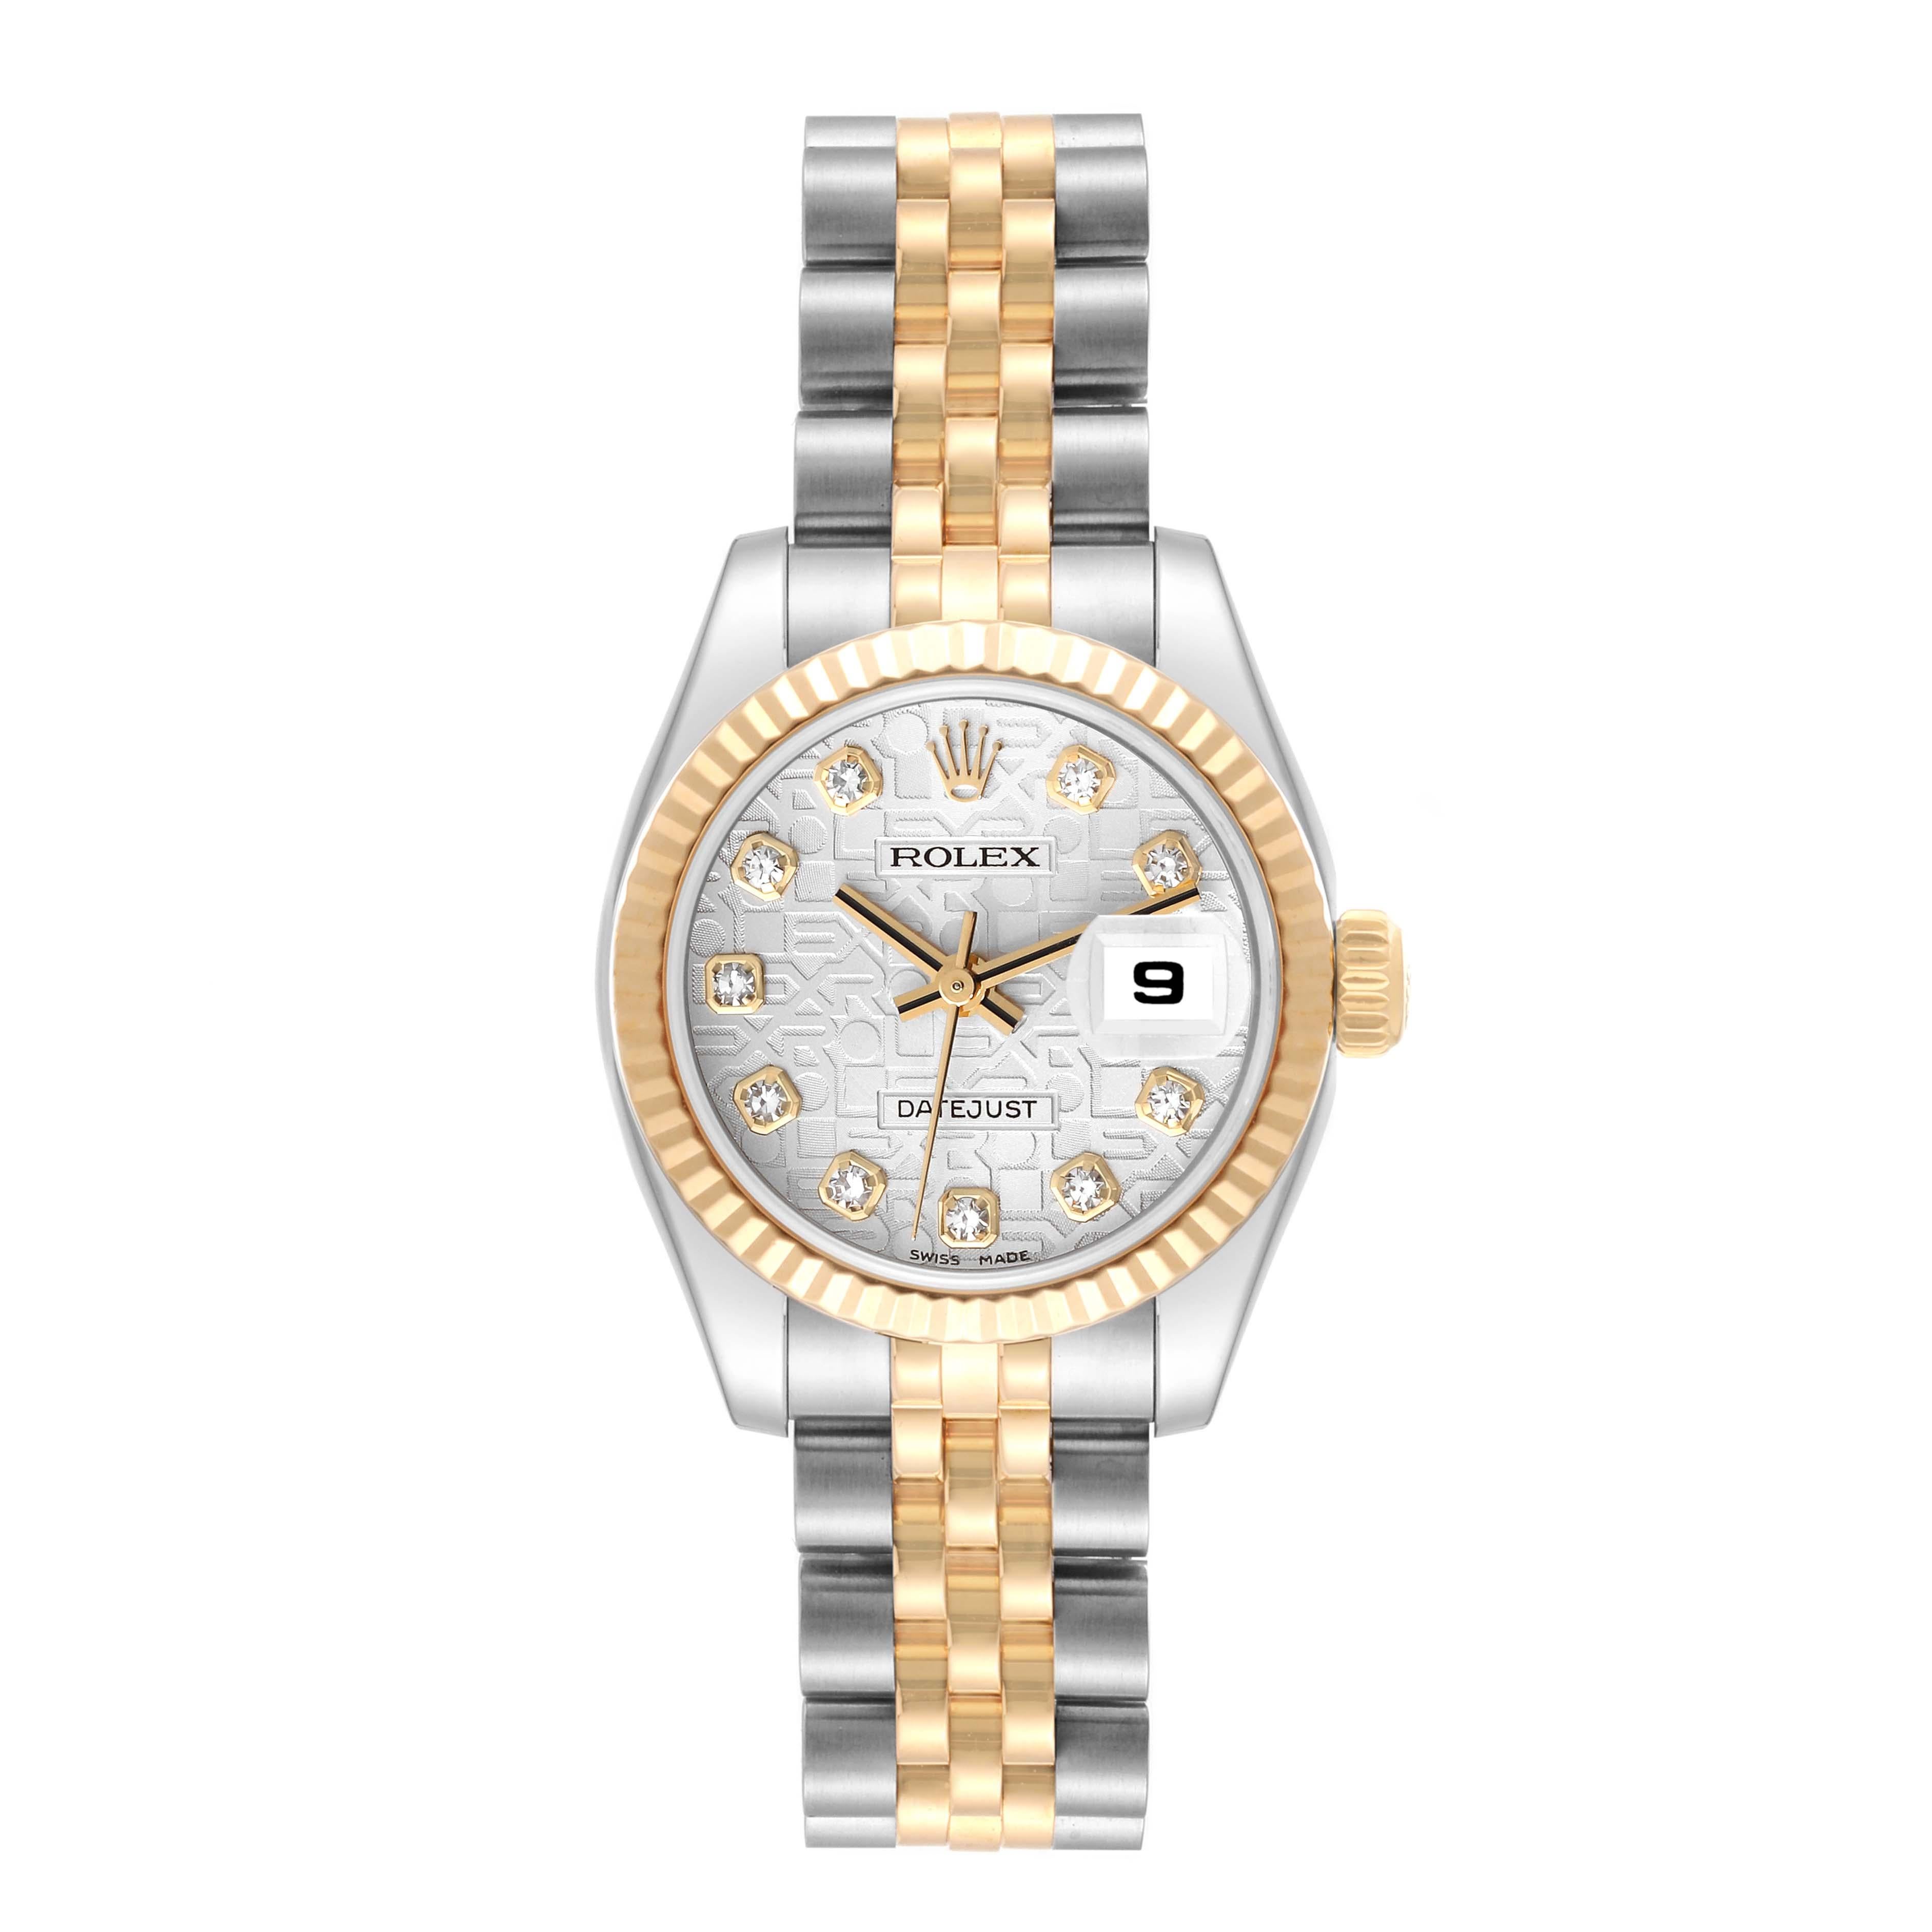 Rolex Datejust Steel Yellow Gold Anniversary Diamond Dial Ladies Watch 179173. Mouvement automatique à remontage automatique, officiellement certifié chronomètre. Boîtier oyster en acier inoxydable de 26 mm de diamètre. Logo Rolex sur une couronne